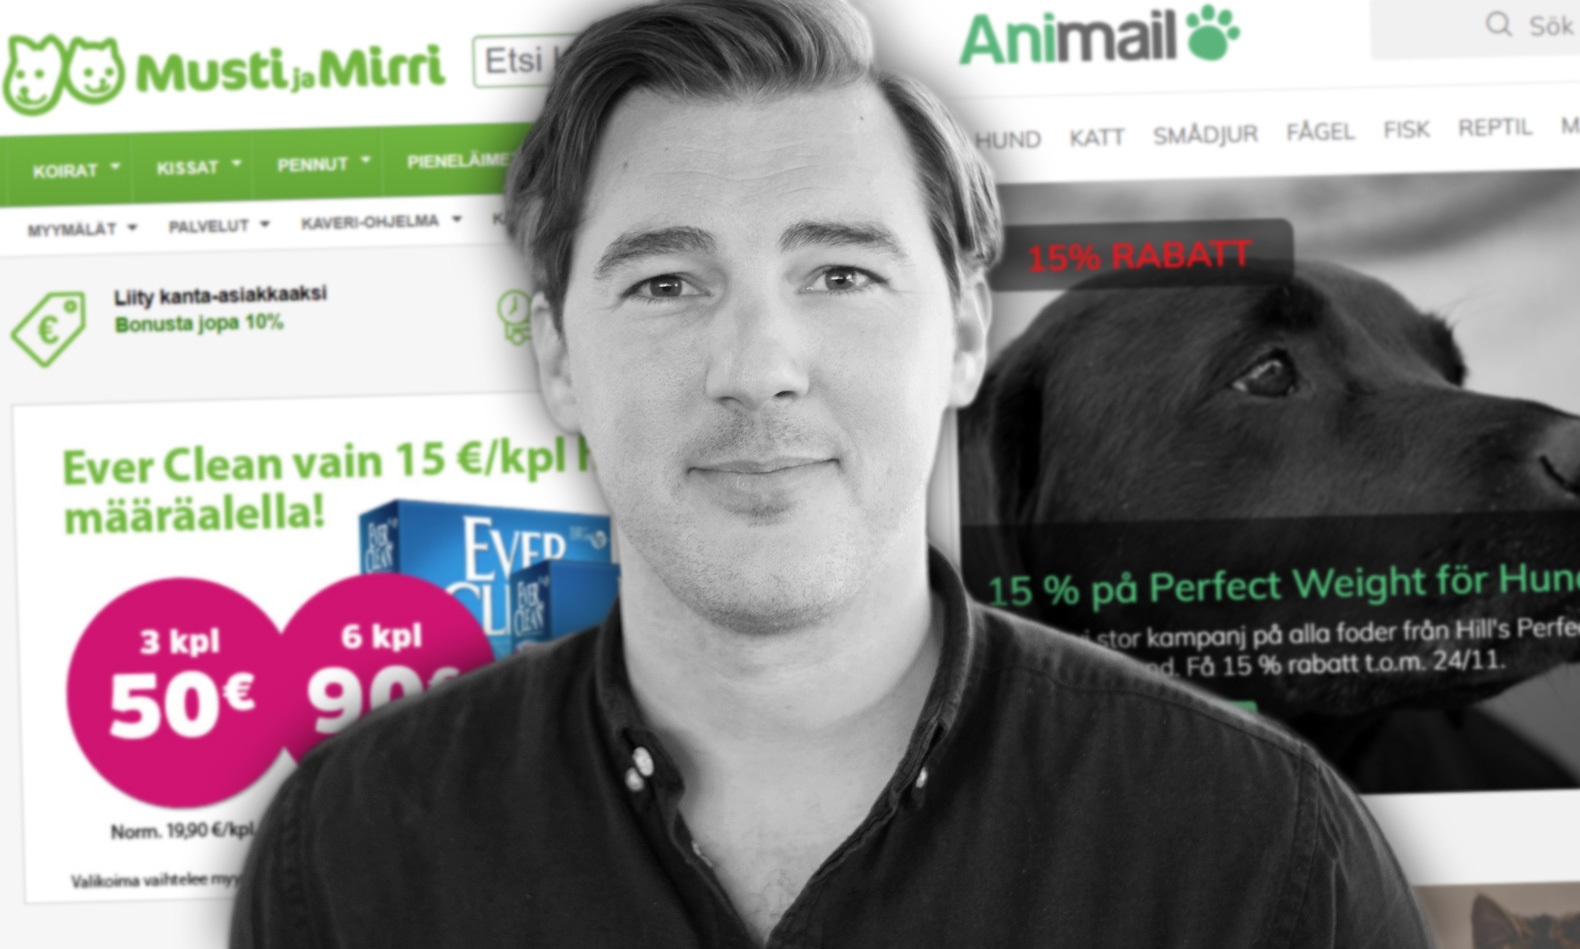 Animail köps upp av finskt miljardbolag